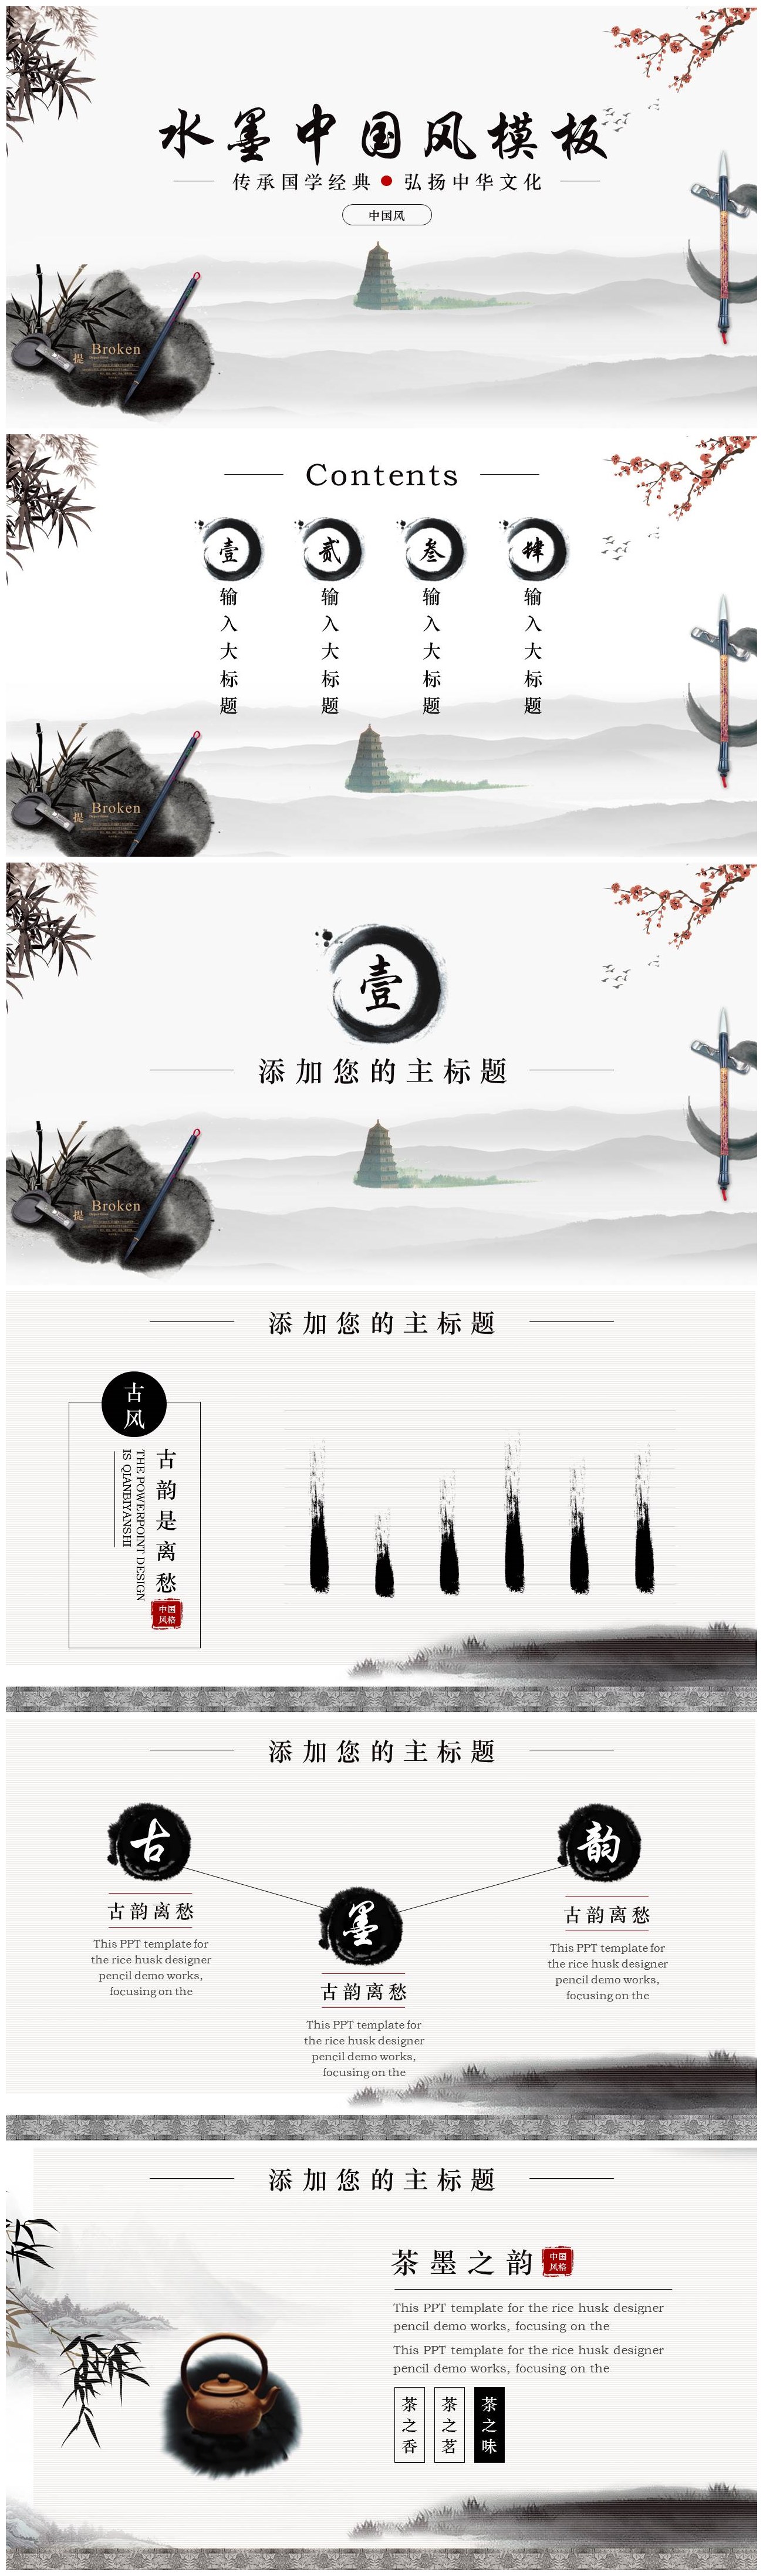 水墨中国风传统文化宣传介绍ppt模板-聚给网